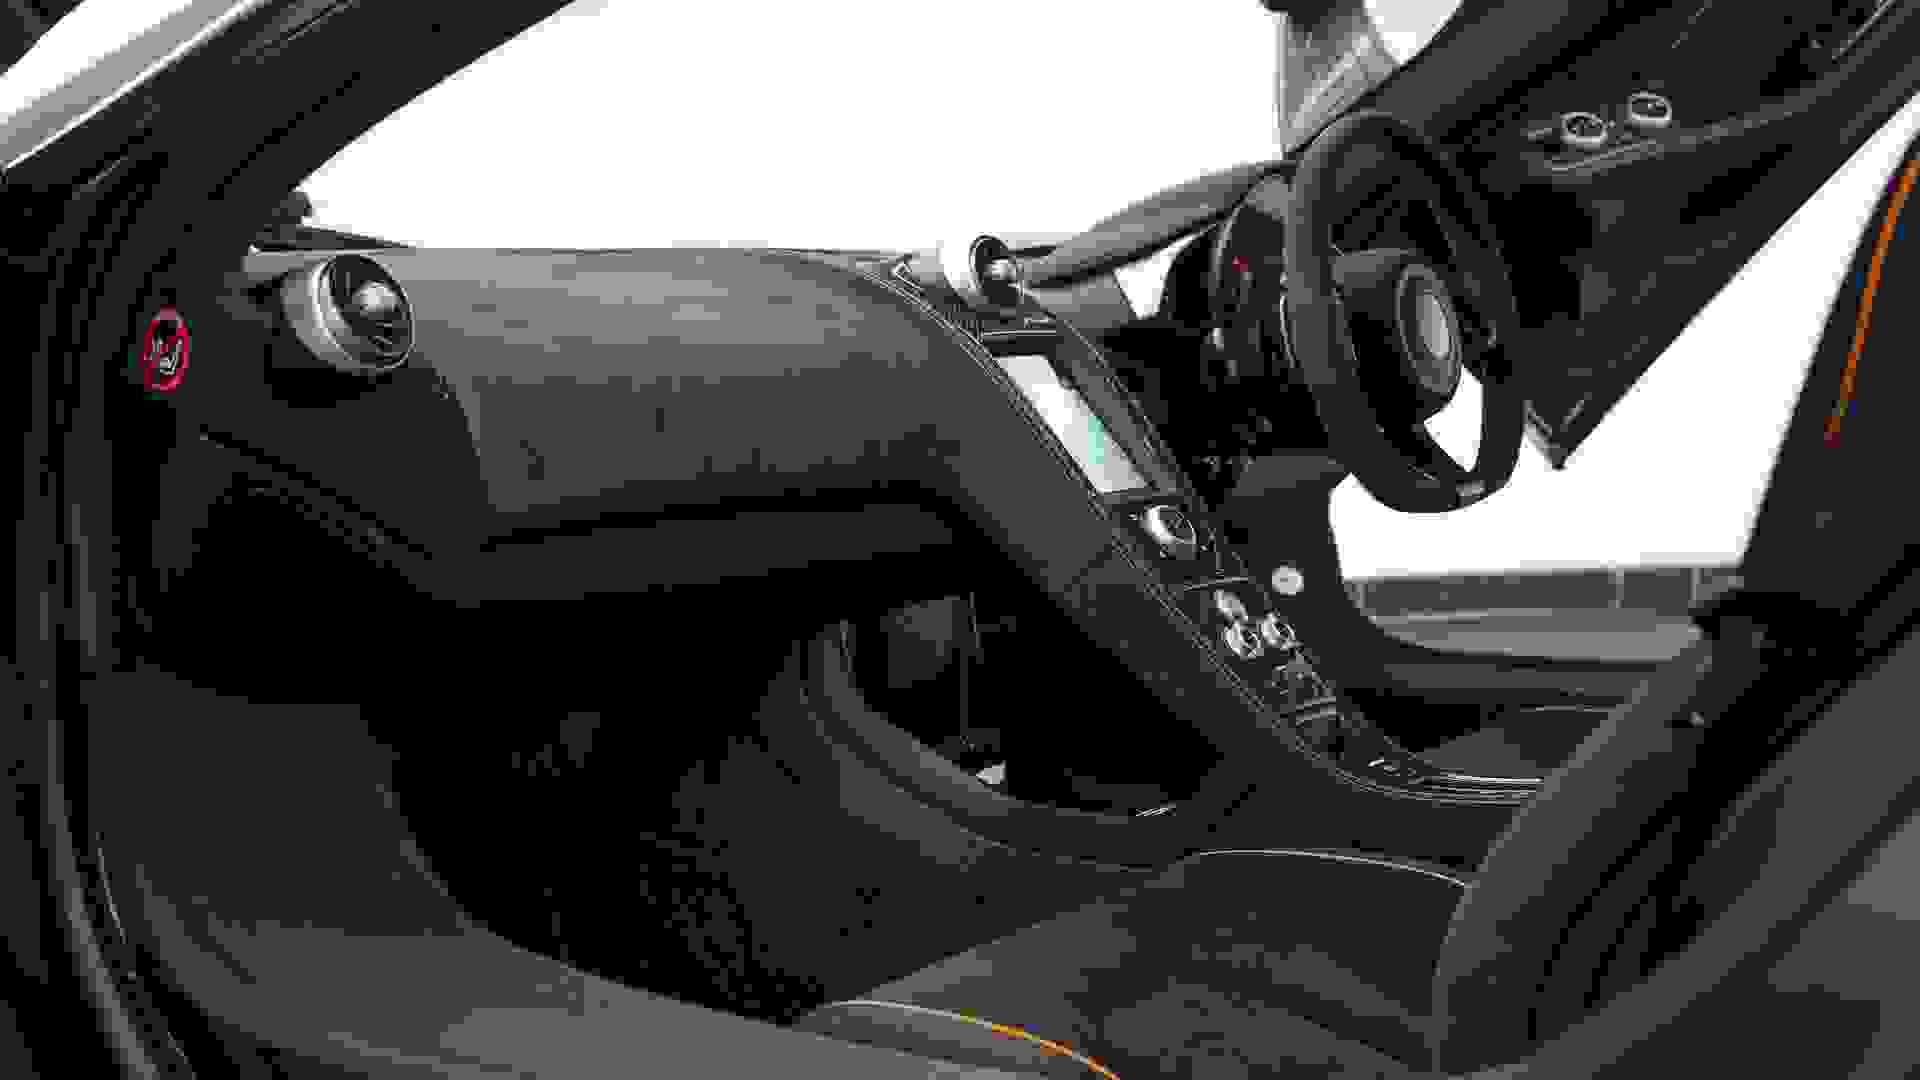 McLaren 650S Photo 42c73985-6db9-4f12-bfef-85e58bc1810c.jpg